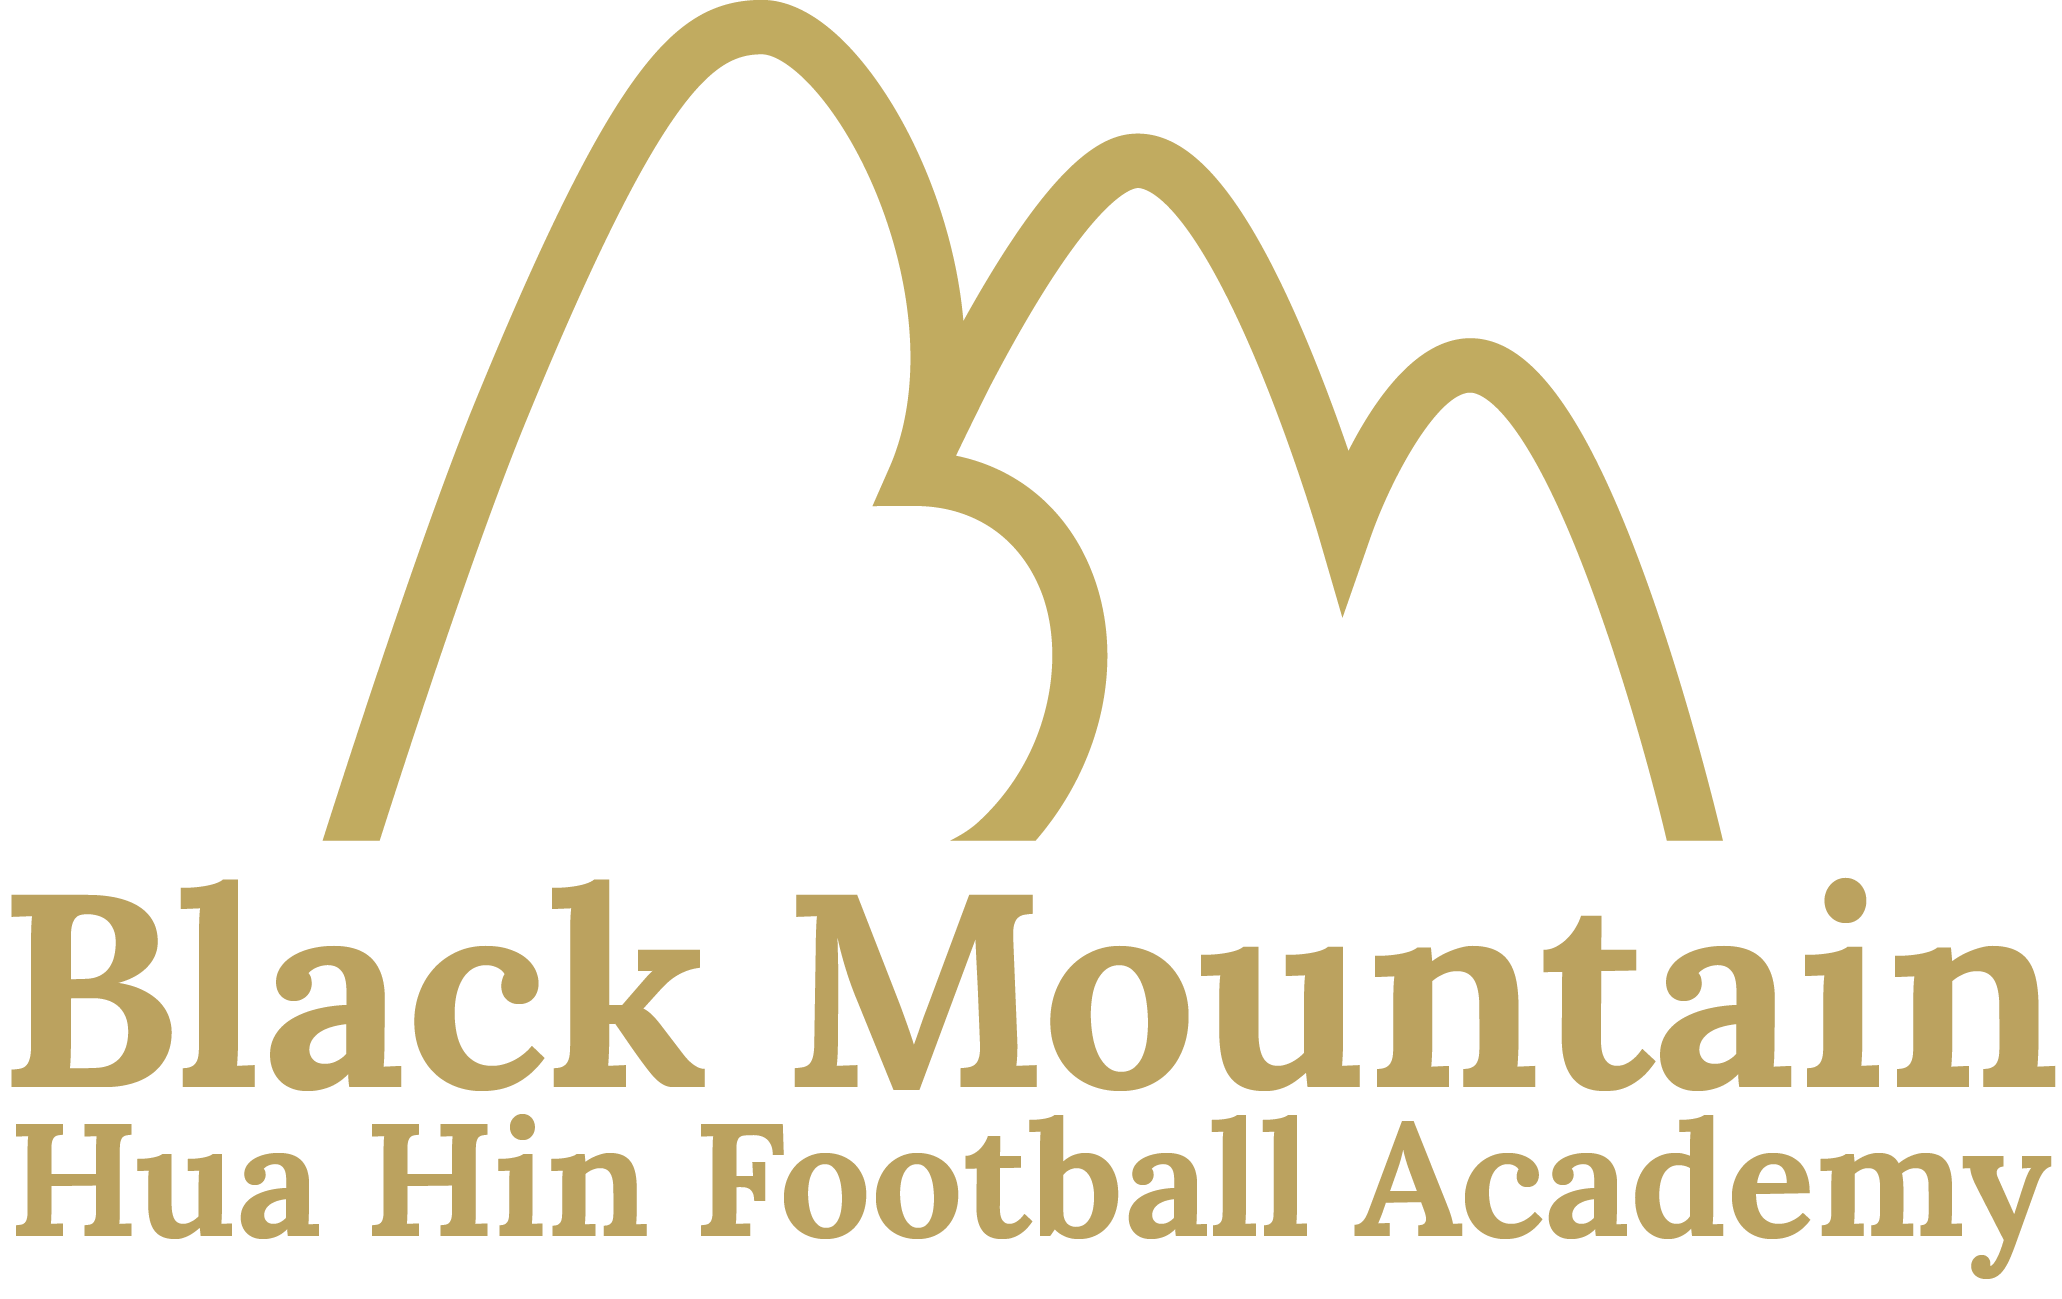 Black Mountain Hua Hin Football Academy